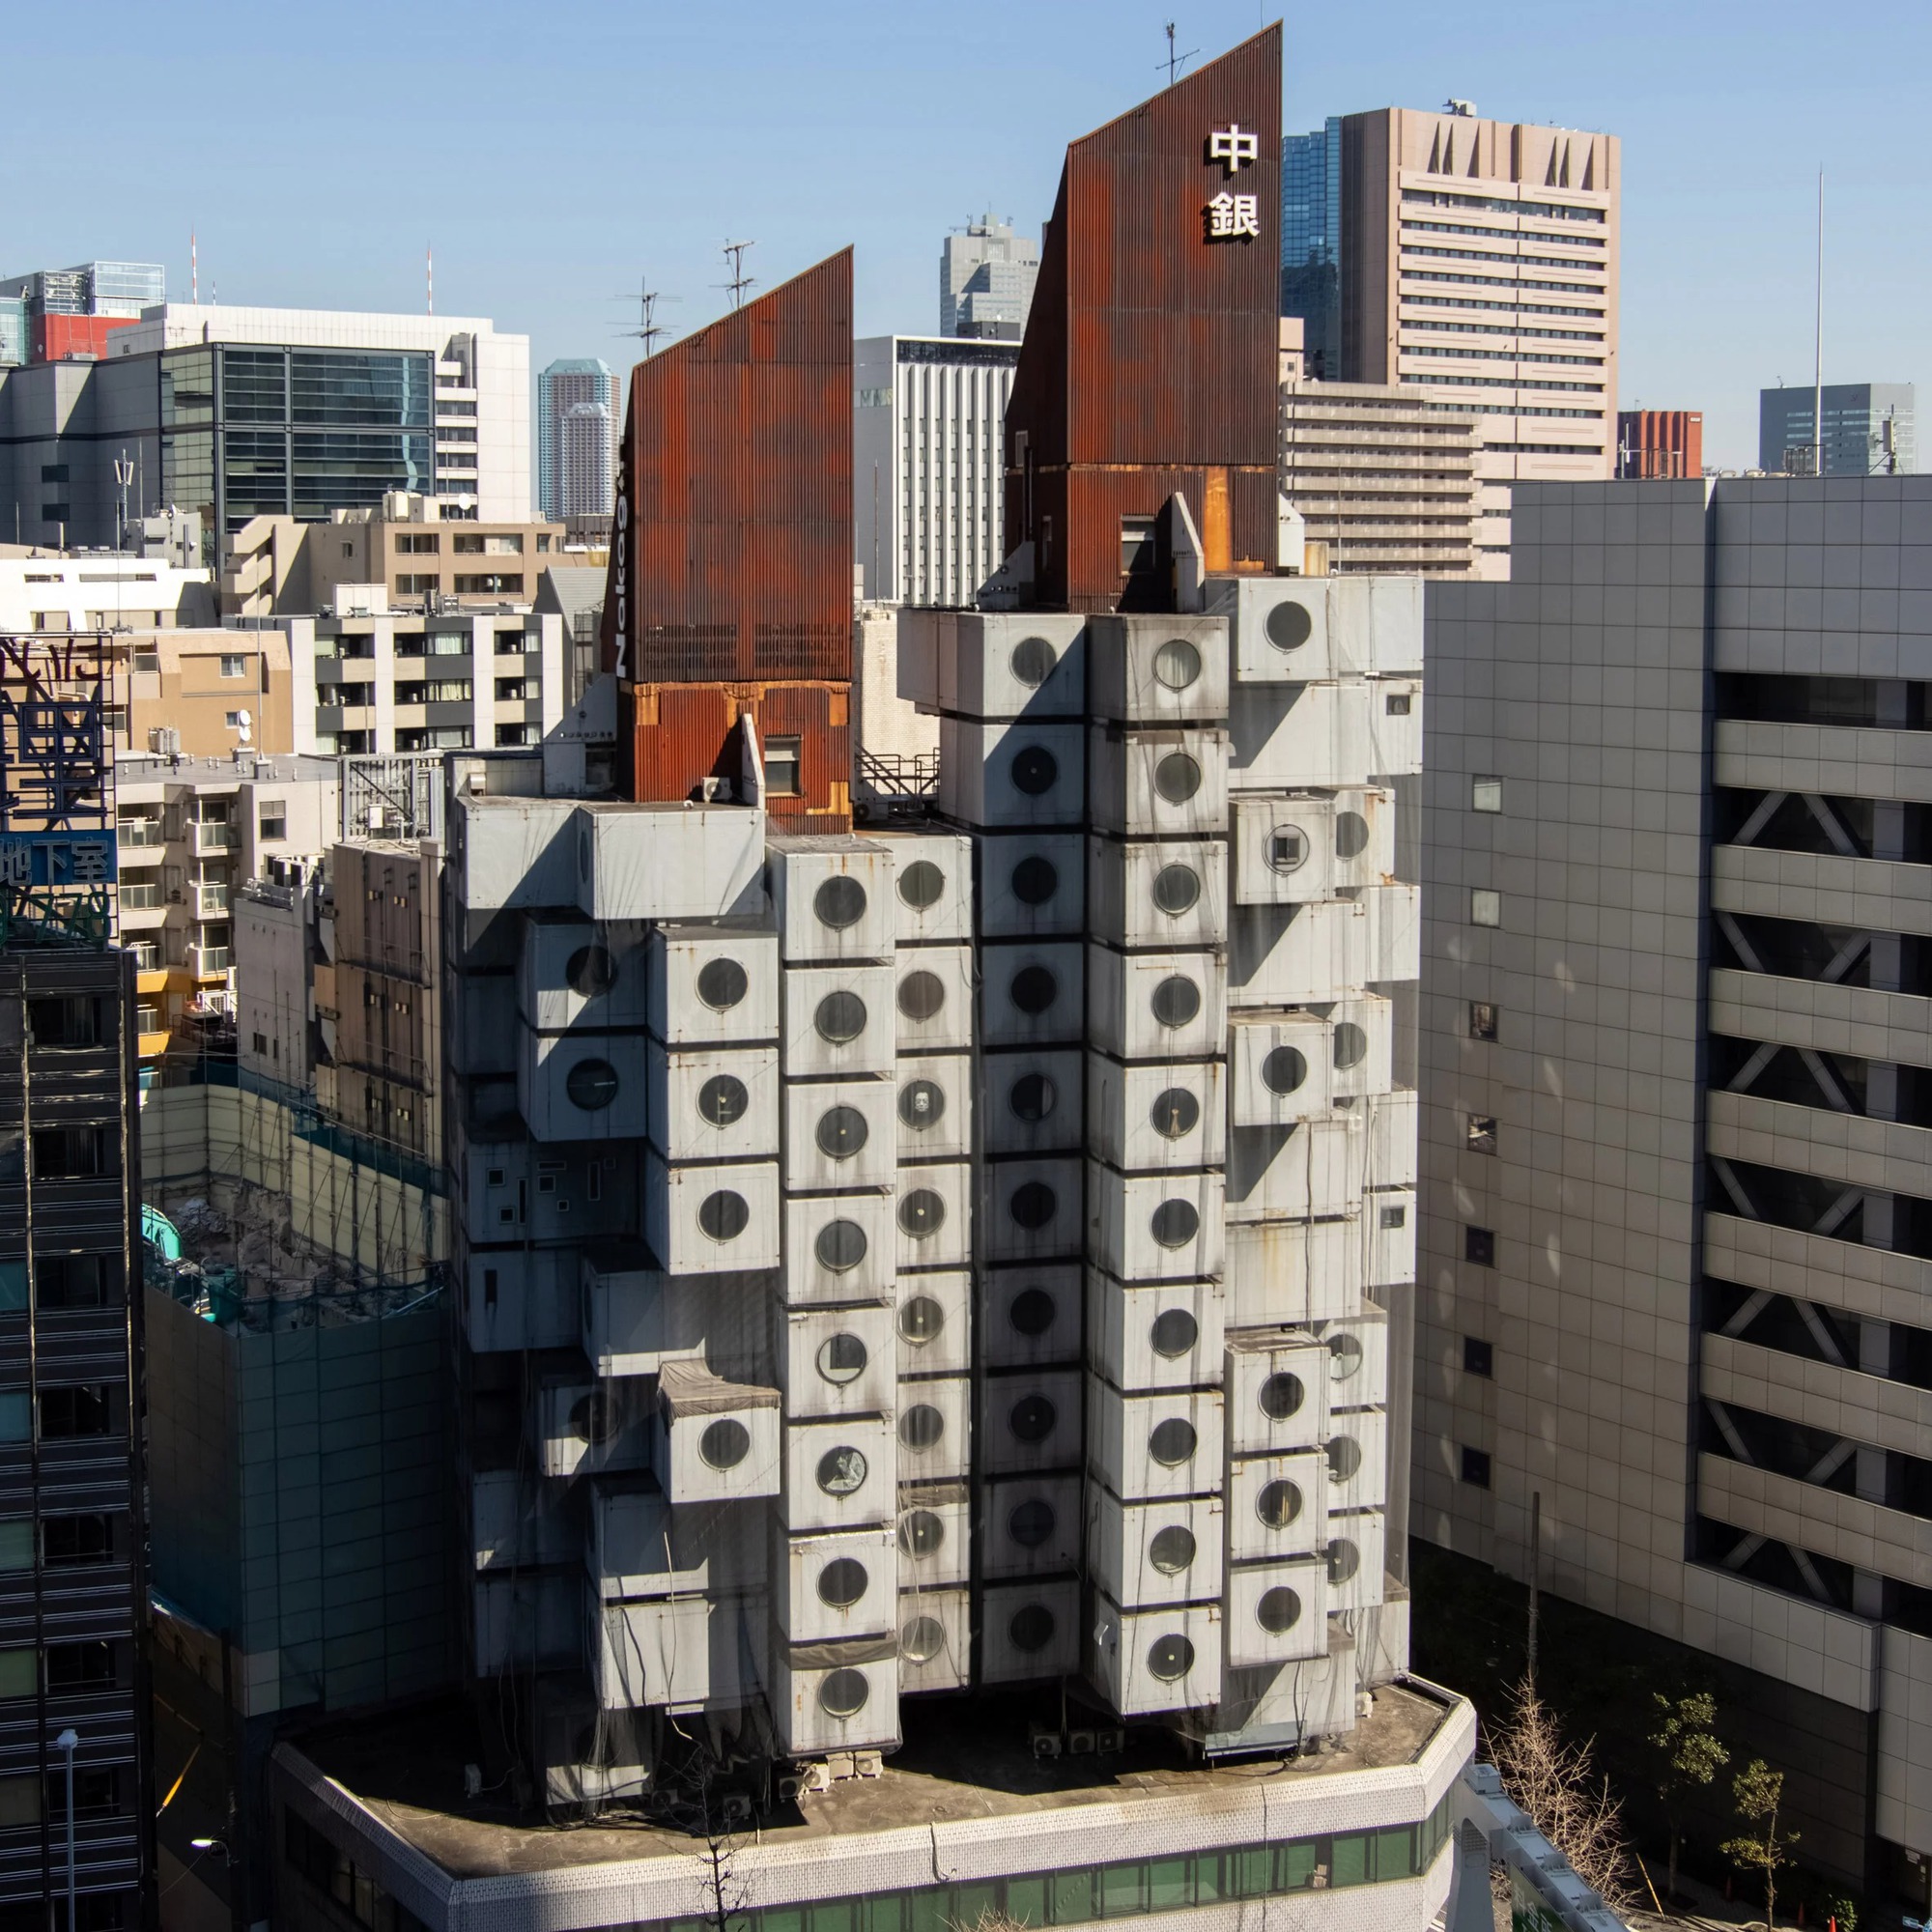 Người dân Nhật Bản lưu luyến nói lời tạm biệt với một tuyệt tác kiến trúc hiện đại, càng nhìn càng thấy thán phục - Ảnh 1.